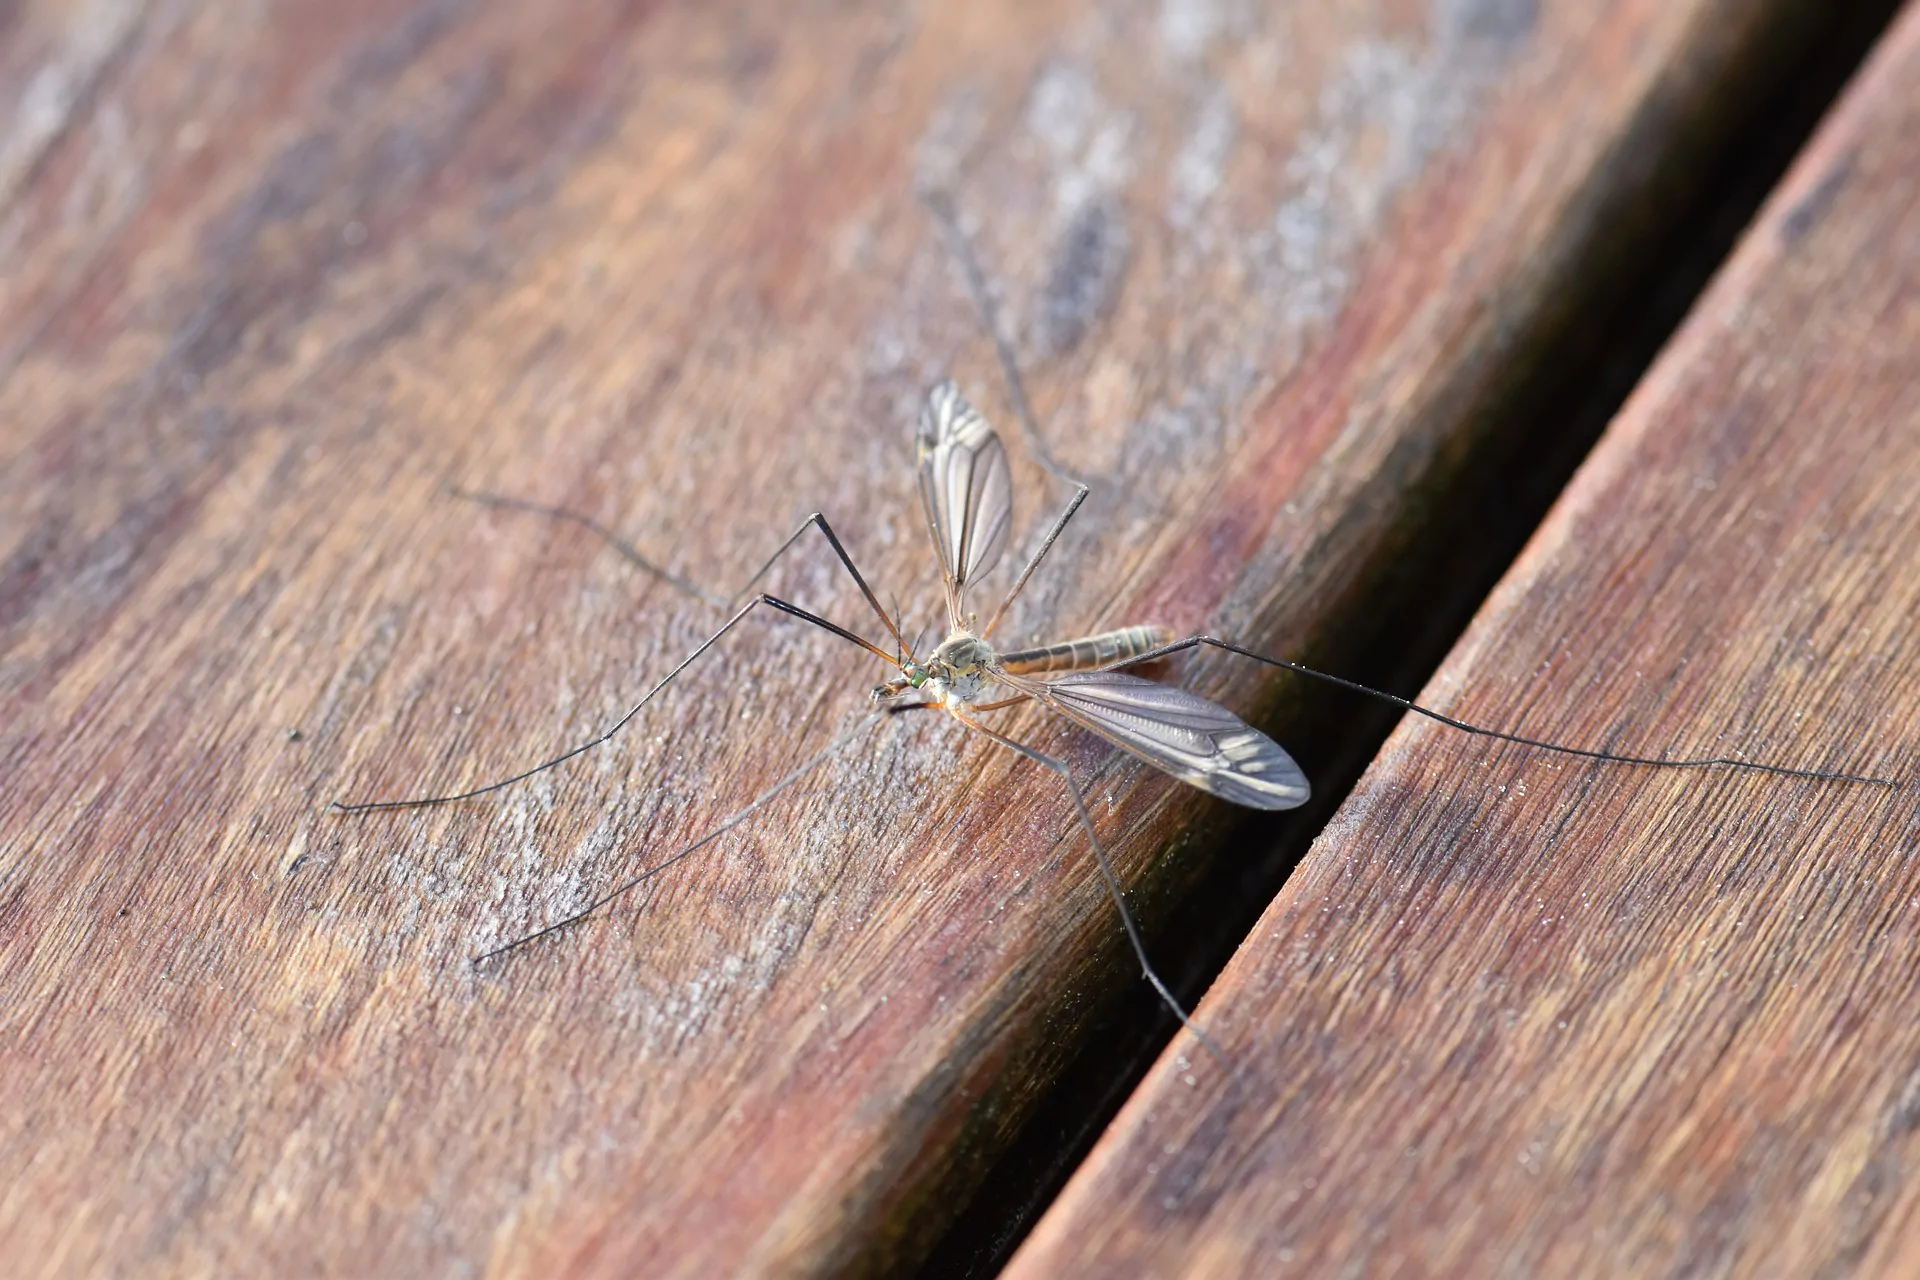 Punture di zanzara: come non farsi pungere in casa